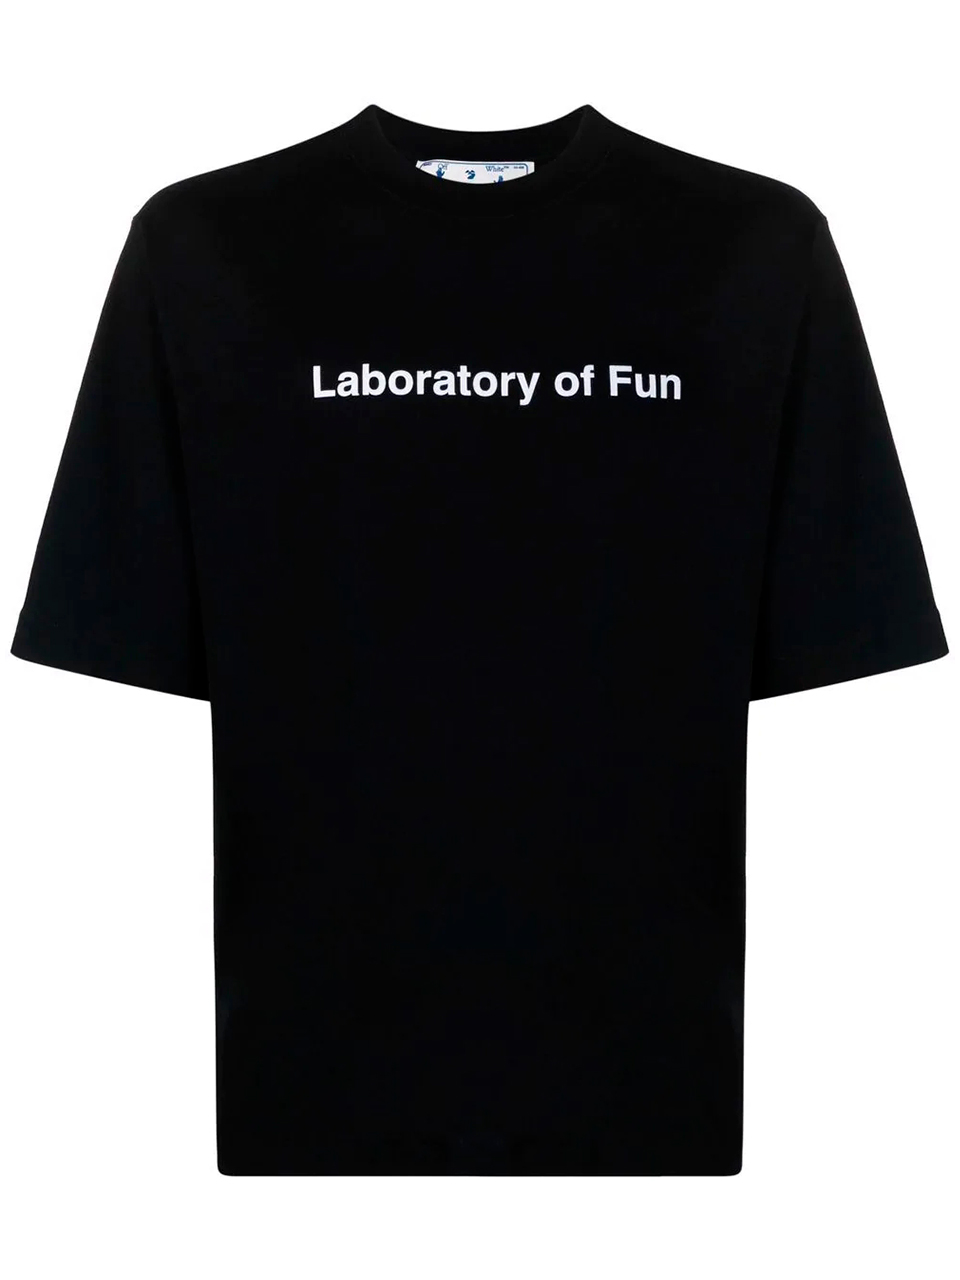 Imagem de: Camiseta Off-White Laboratory of Fun Preta